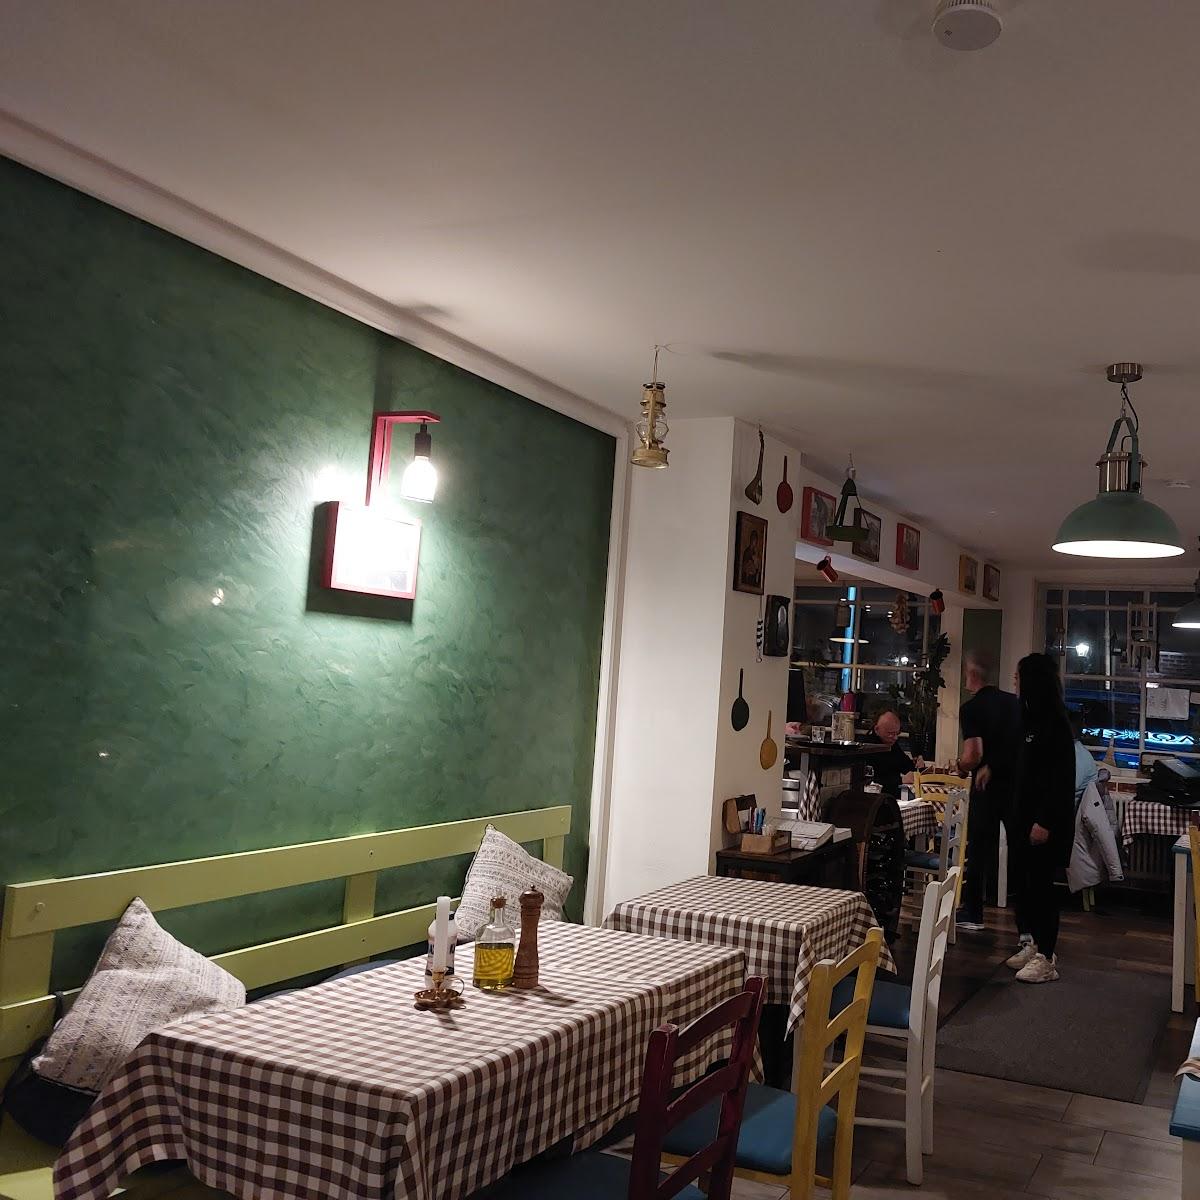 Restaurant "???????? Greek Taverna" in Berlin